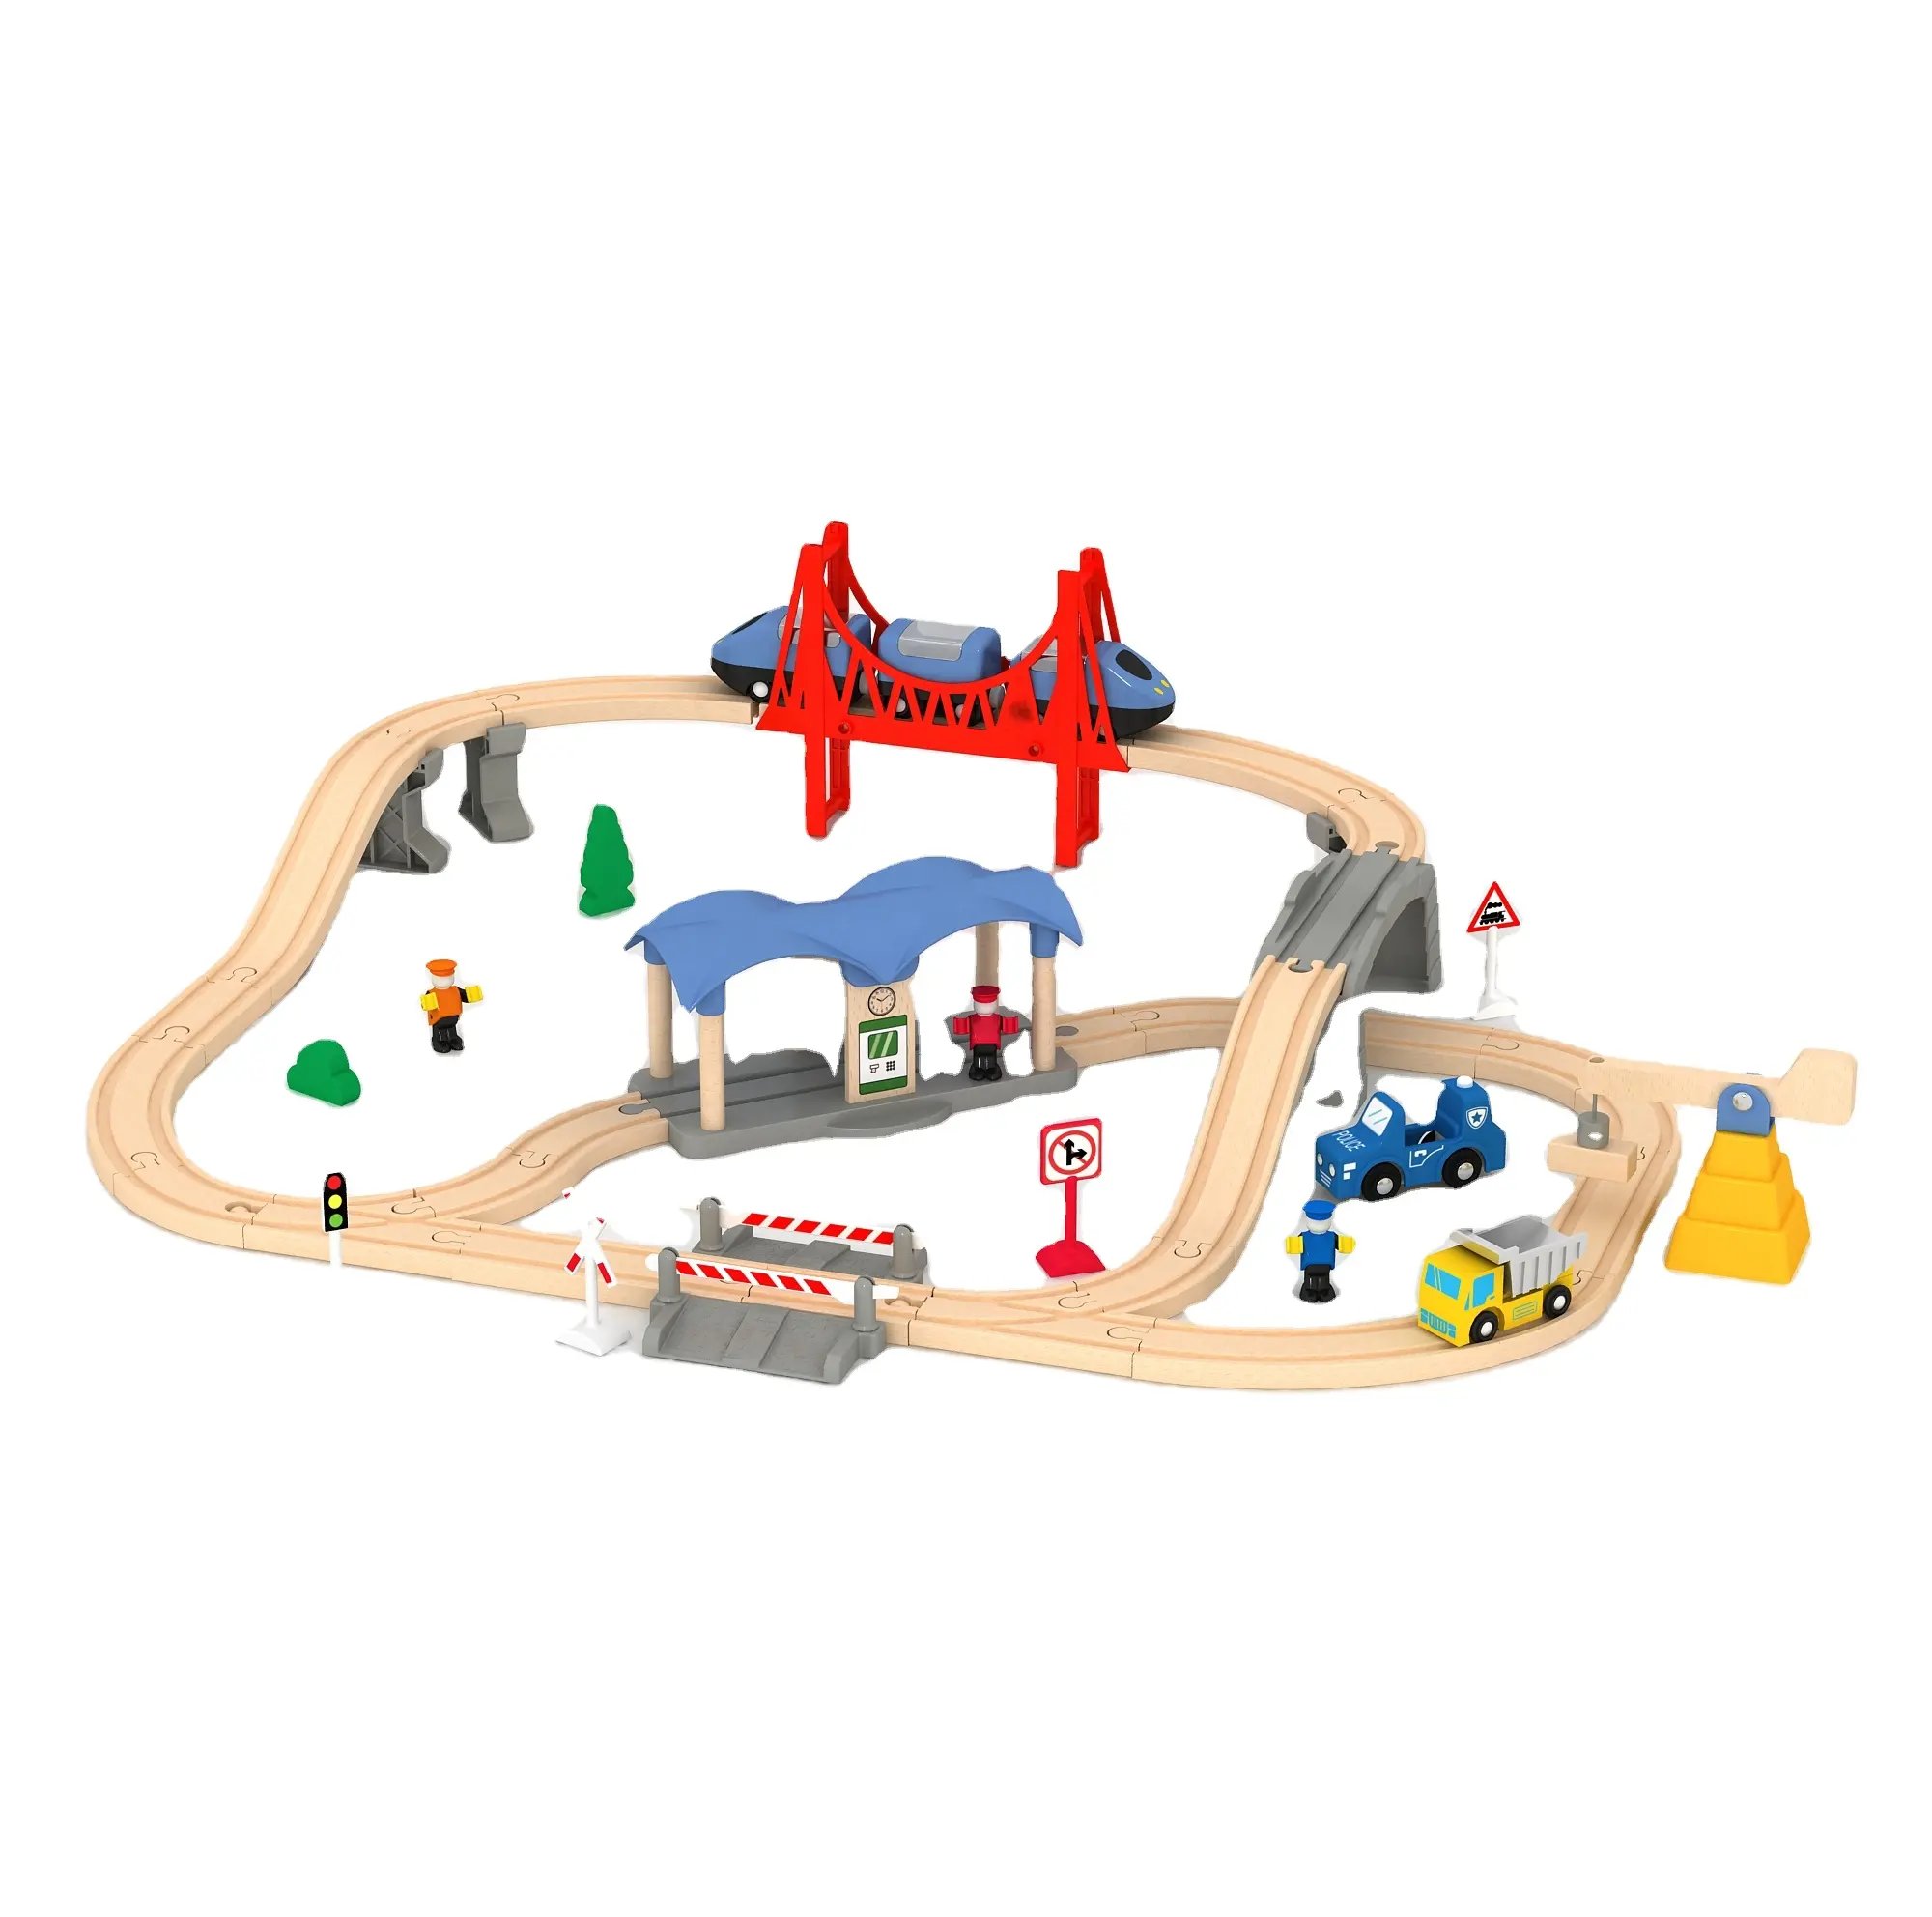 Set de trenes de juguete con ranuras modernas, caja de madera de 2022x75x17, 50 unidades, EN71, ASTM, 60x42X42, Unisex, Null 23, 1:5, 118